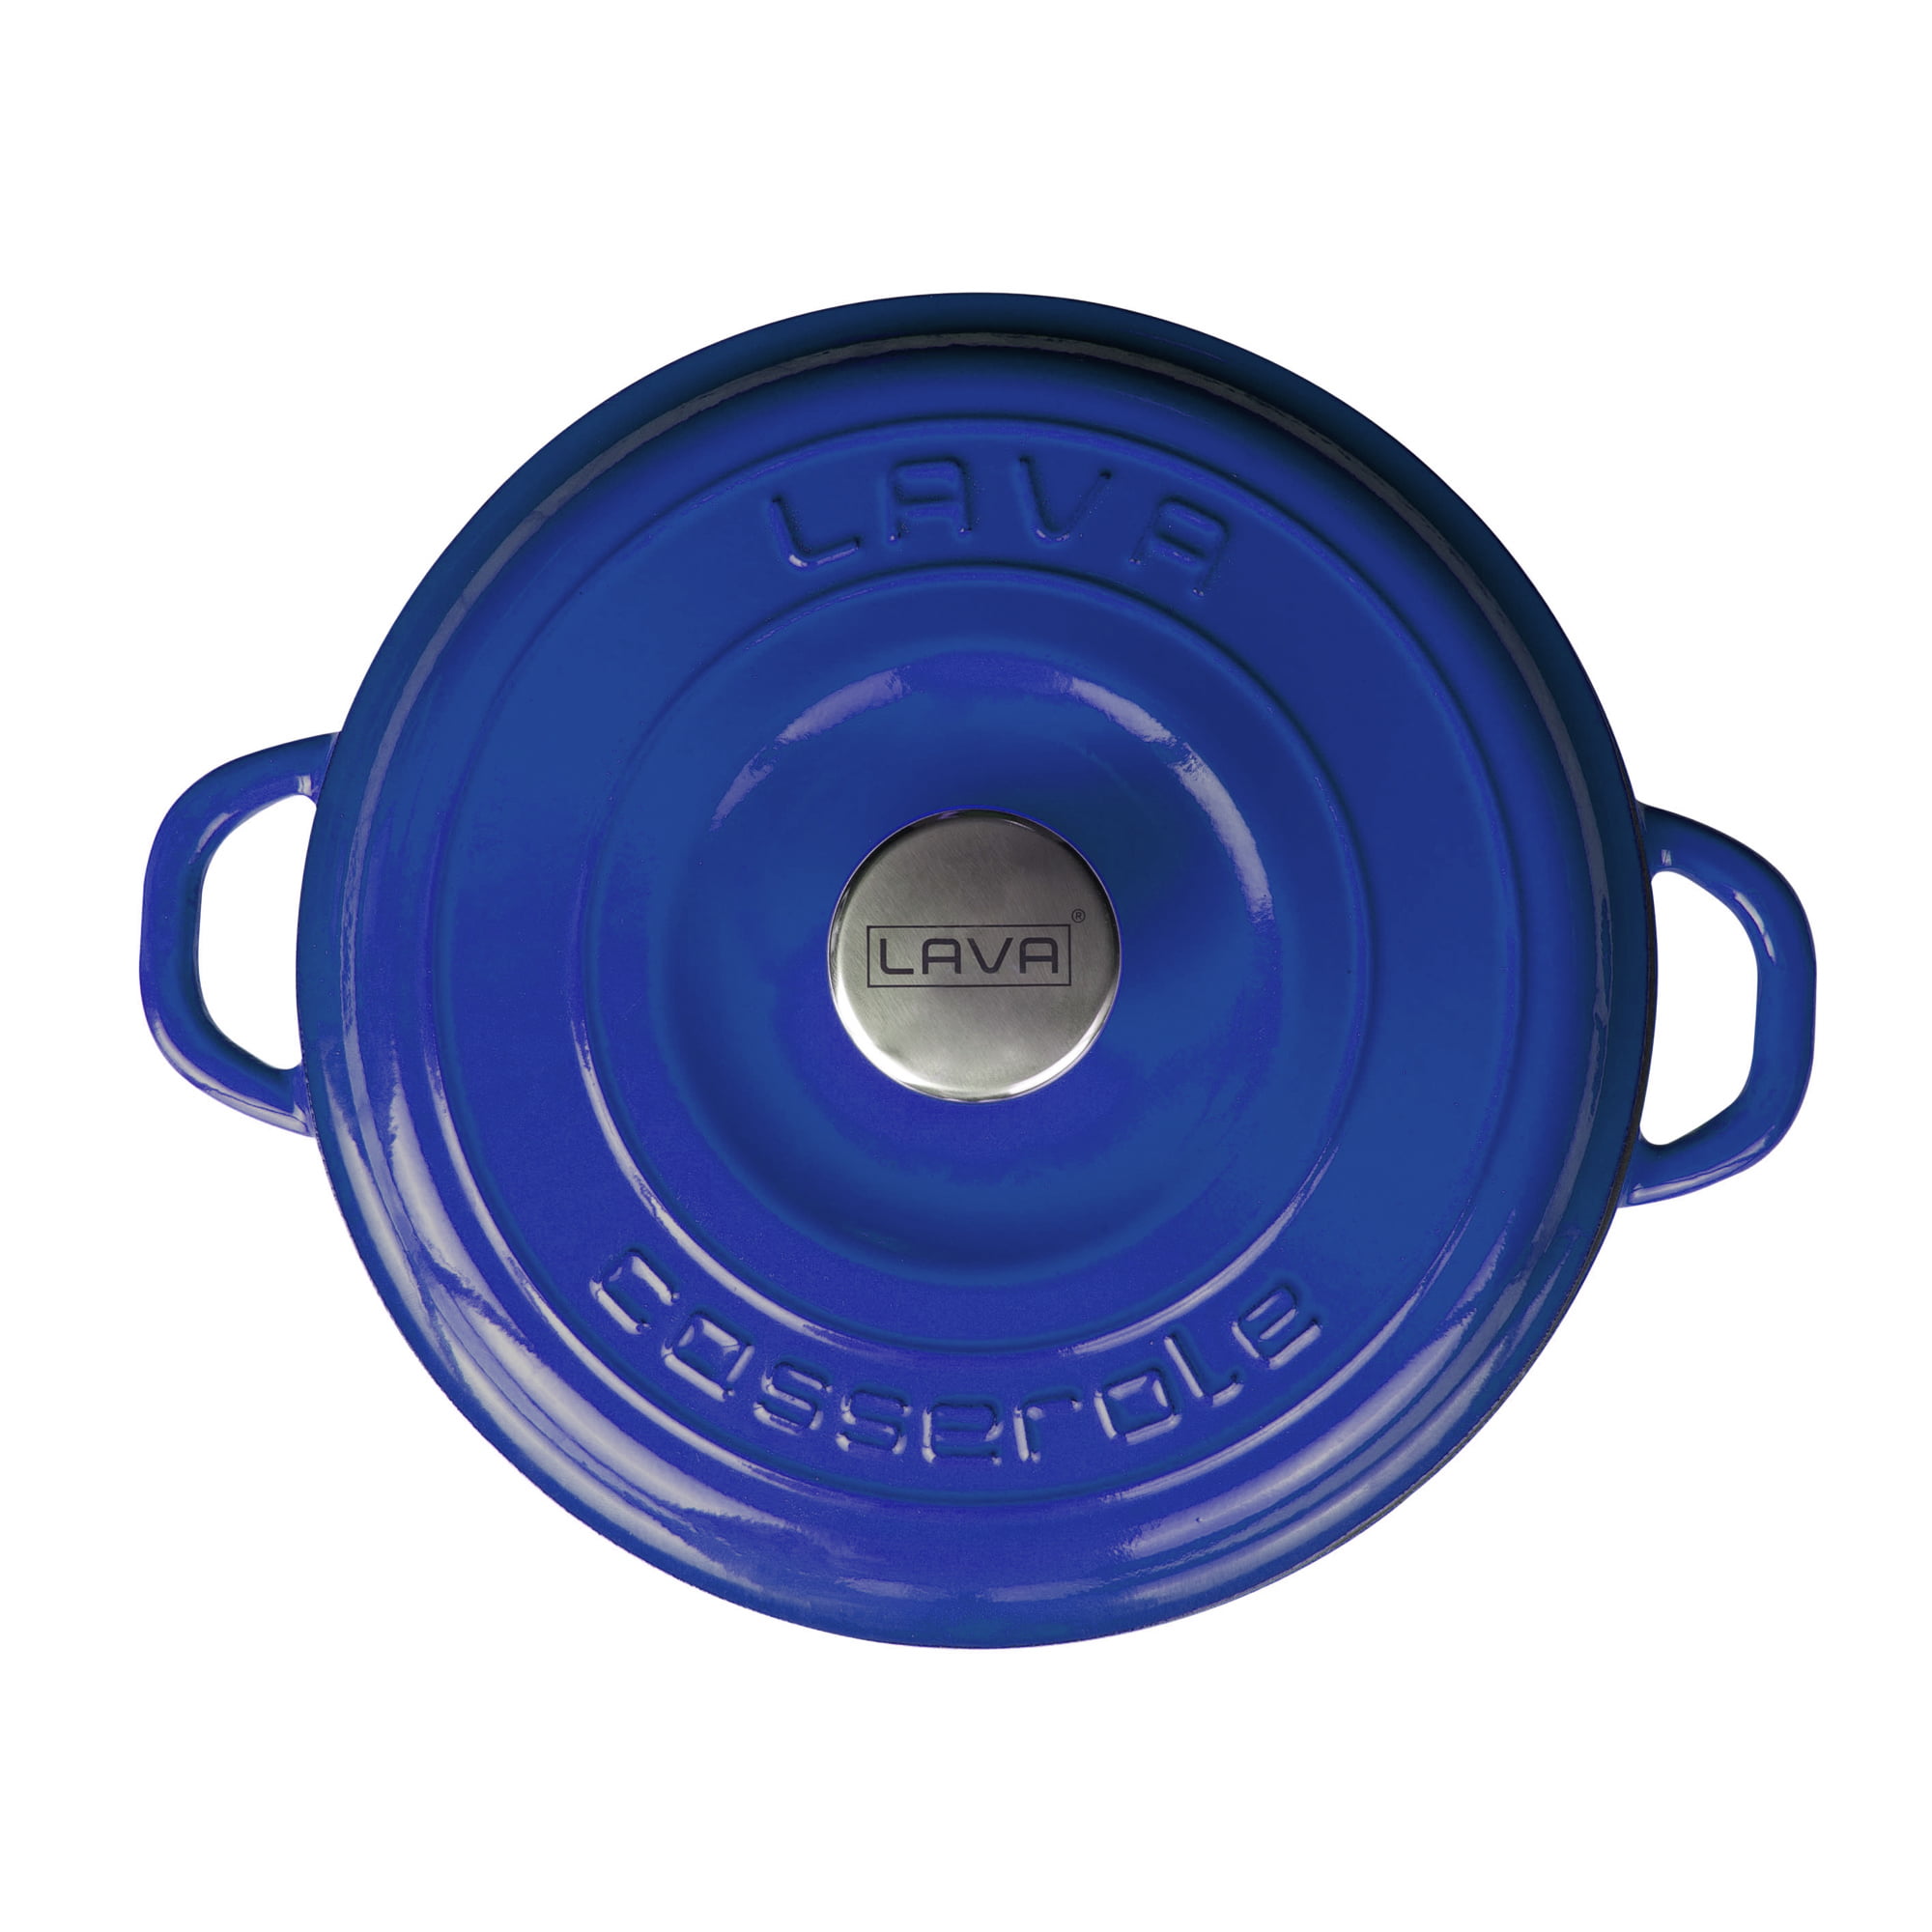 Lexi Home 5 Qt. Enameled Cast Iron Dutch Oven Pot - Blue Shadow